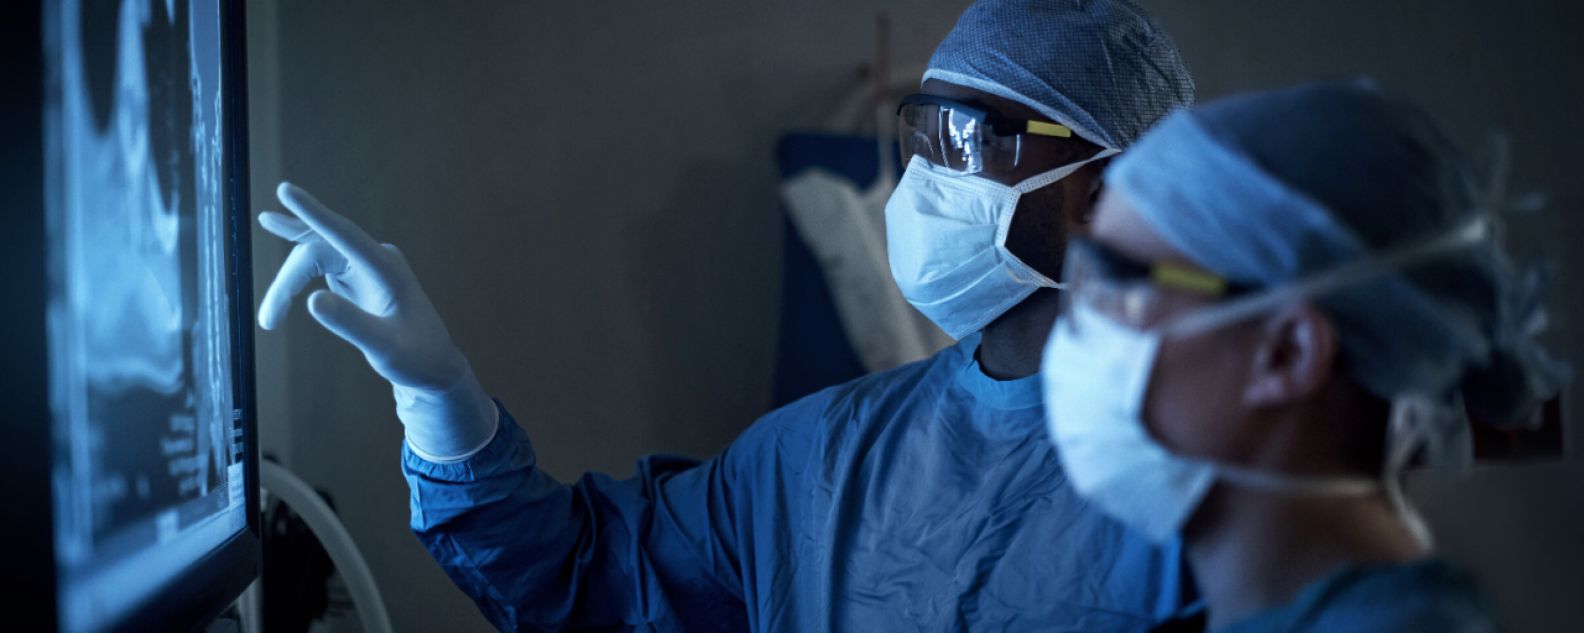 Foto de dois cirurgiões analisando imagens médicas de um paciente durante cirurgia